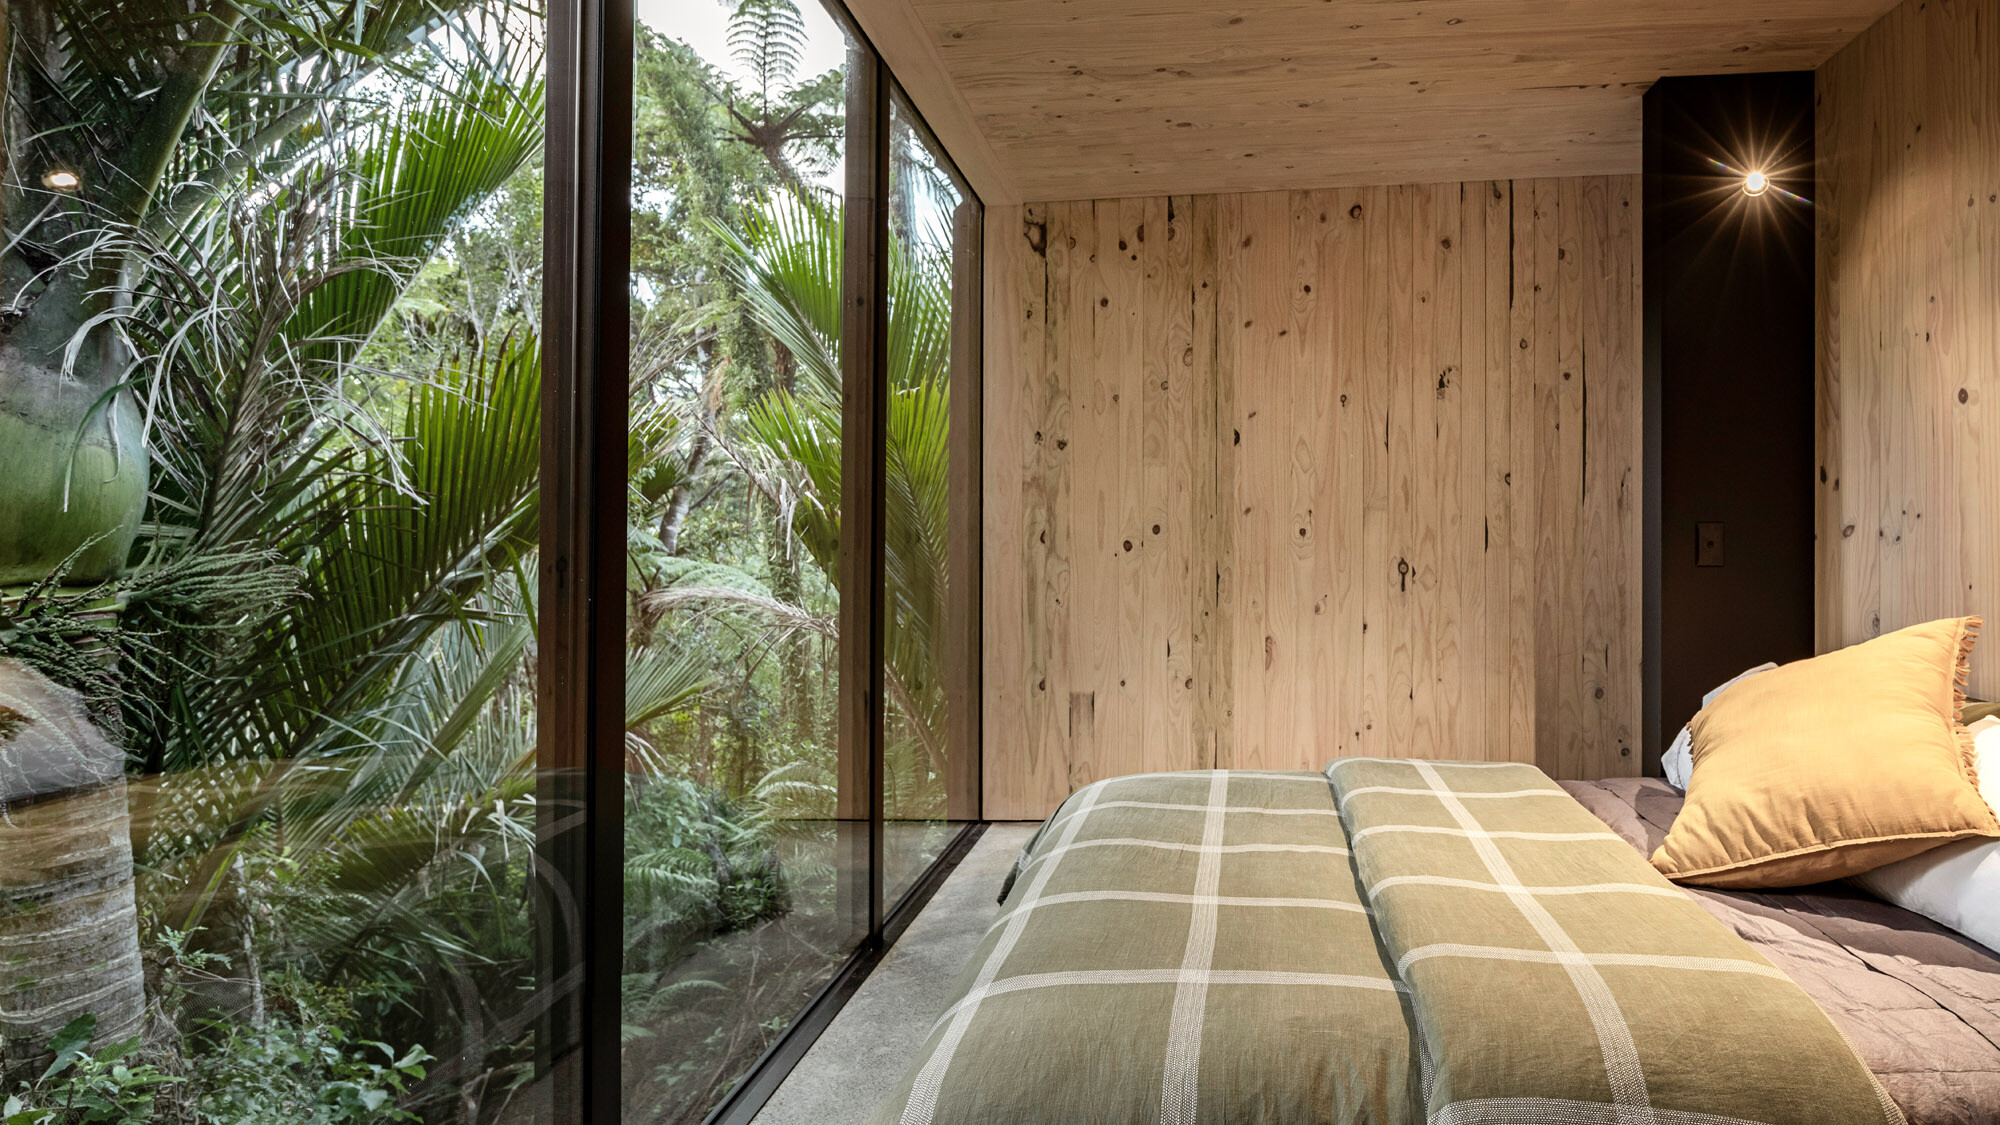 Das Schlafzimmer mit dem bodentiefen Fenster, an das der Urwald direkt anschließt.